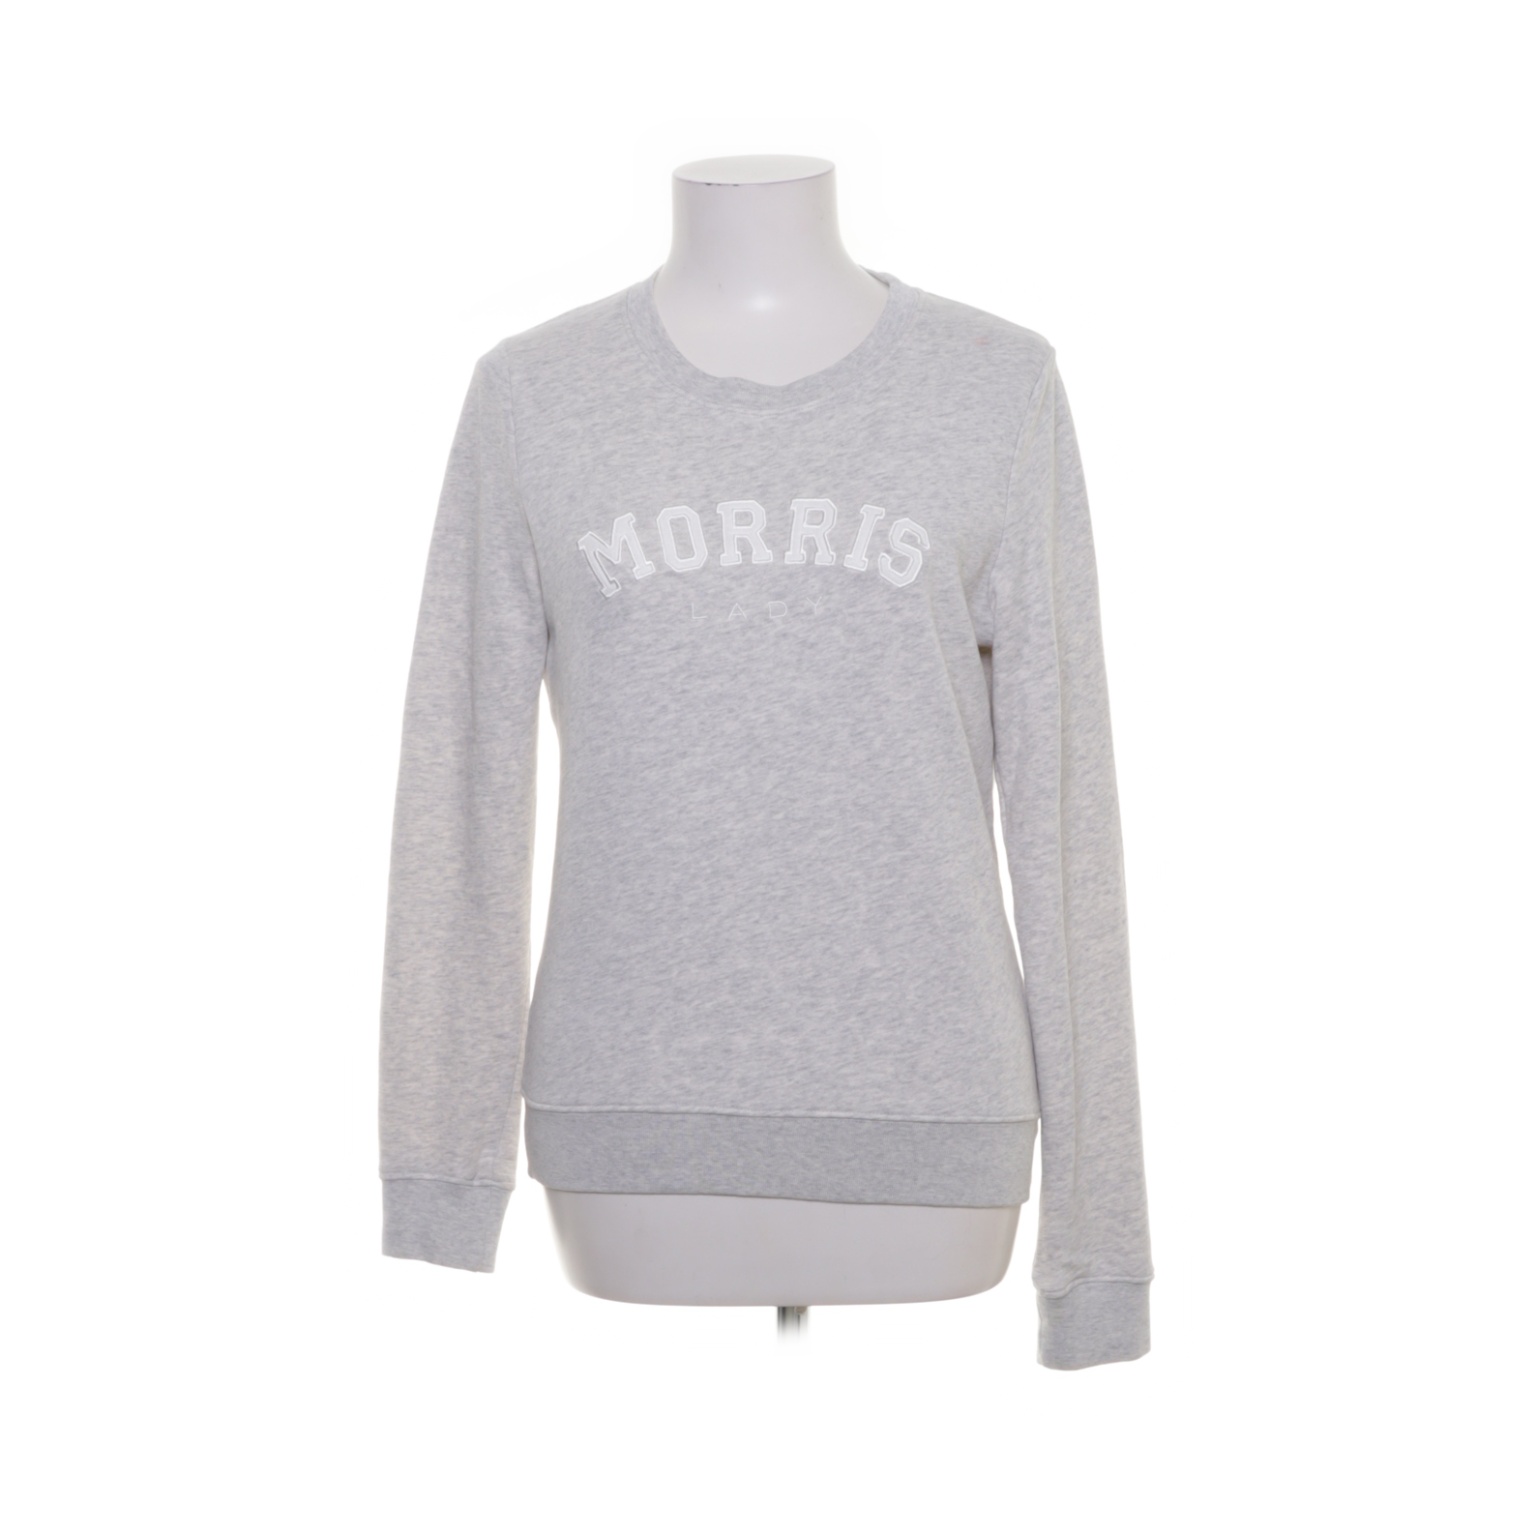 Morris Lady - Sweatshirt - Größe: XS - Grau von Morris Lady